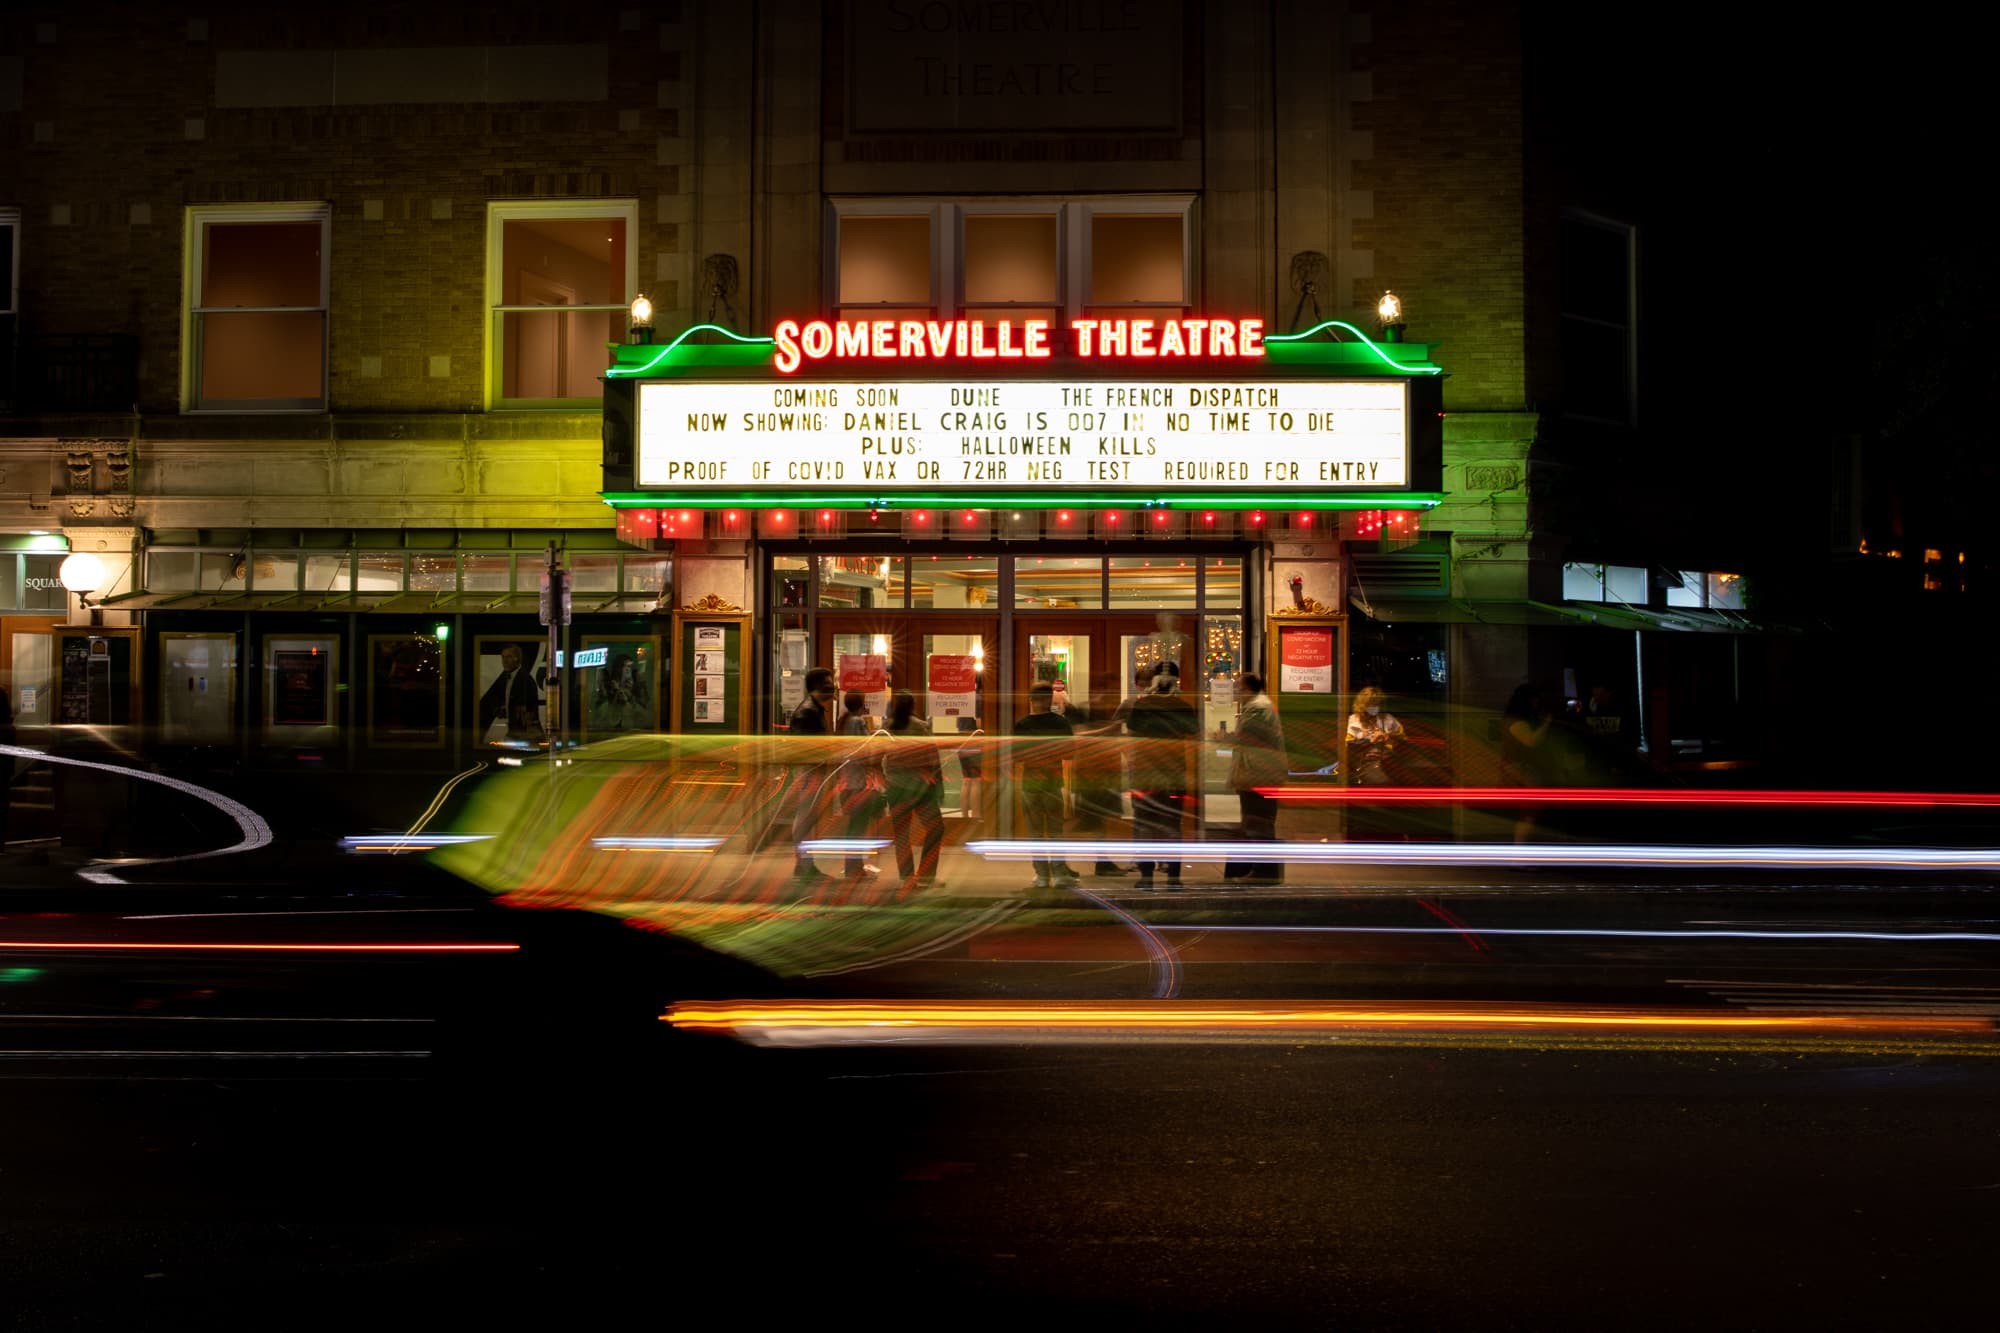 The Somerville Theatre's marquee. (Courtesy Marissa Fiorucci)